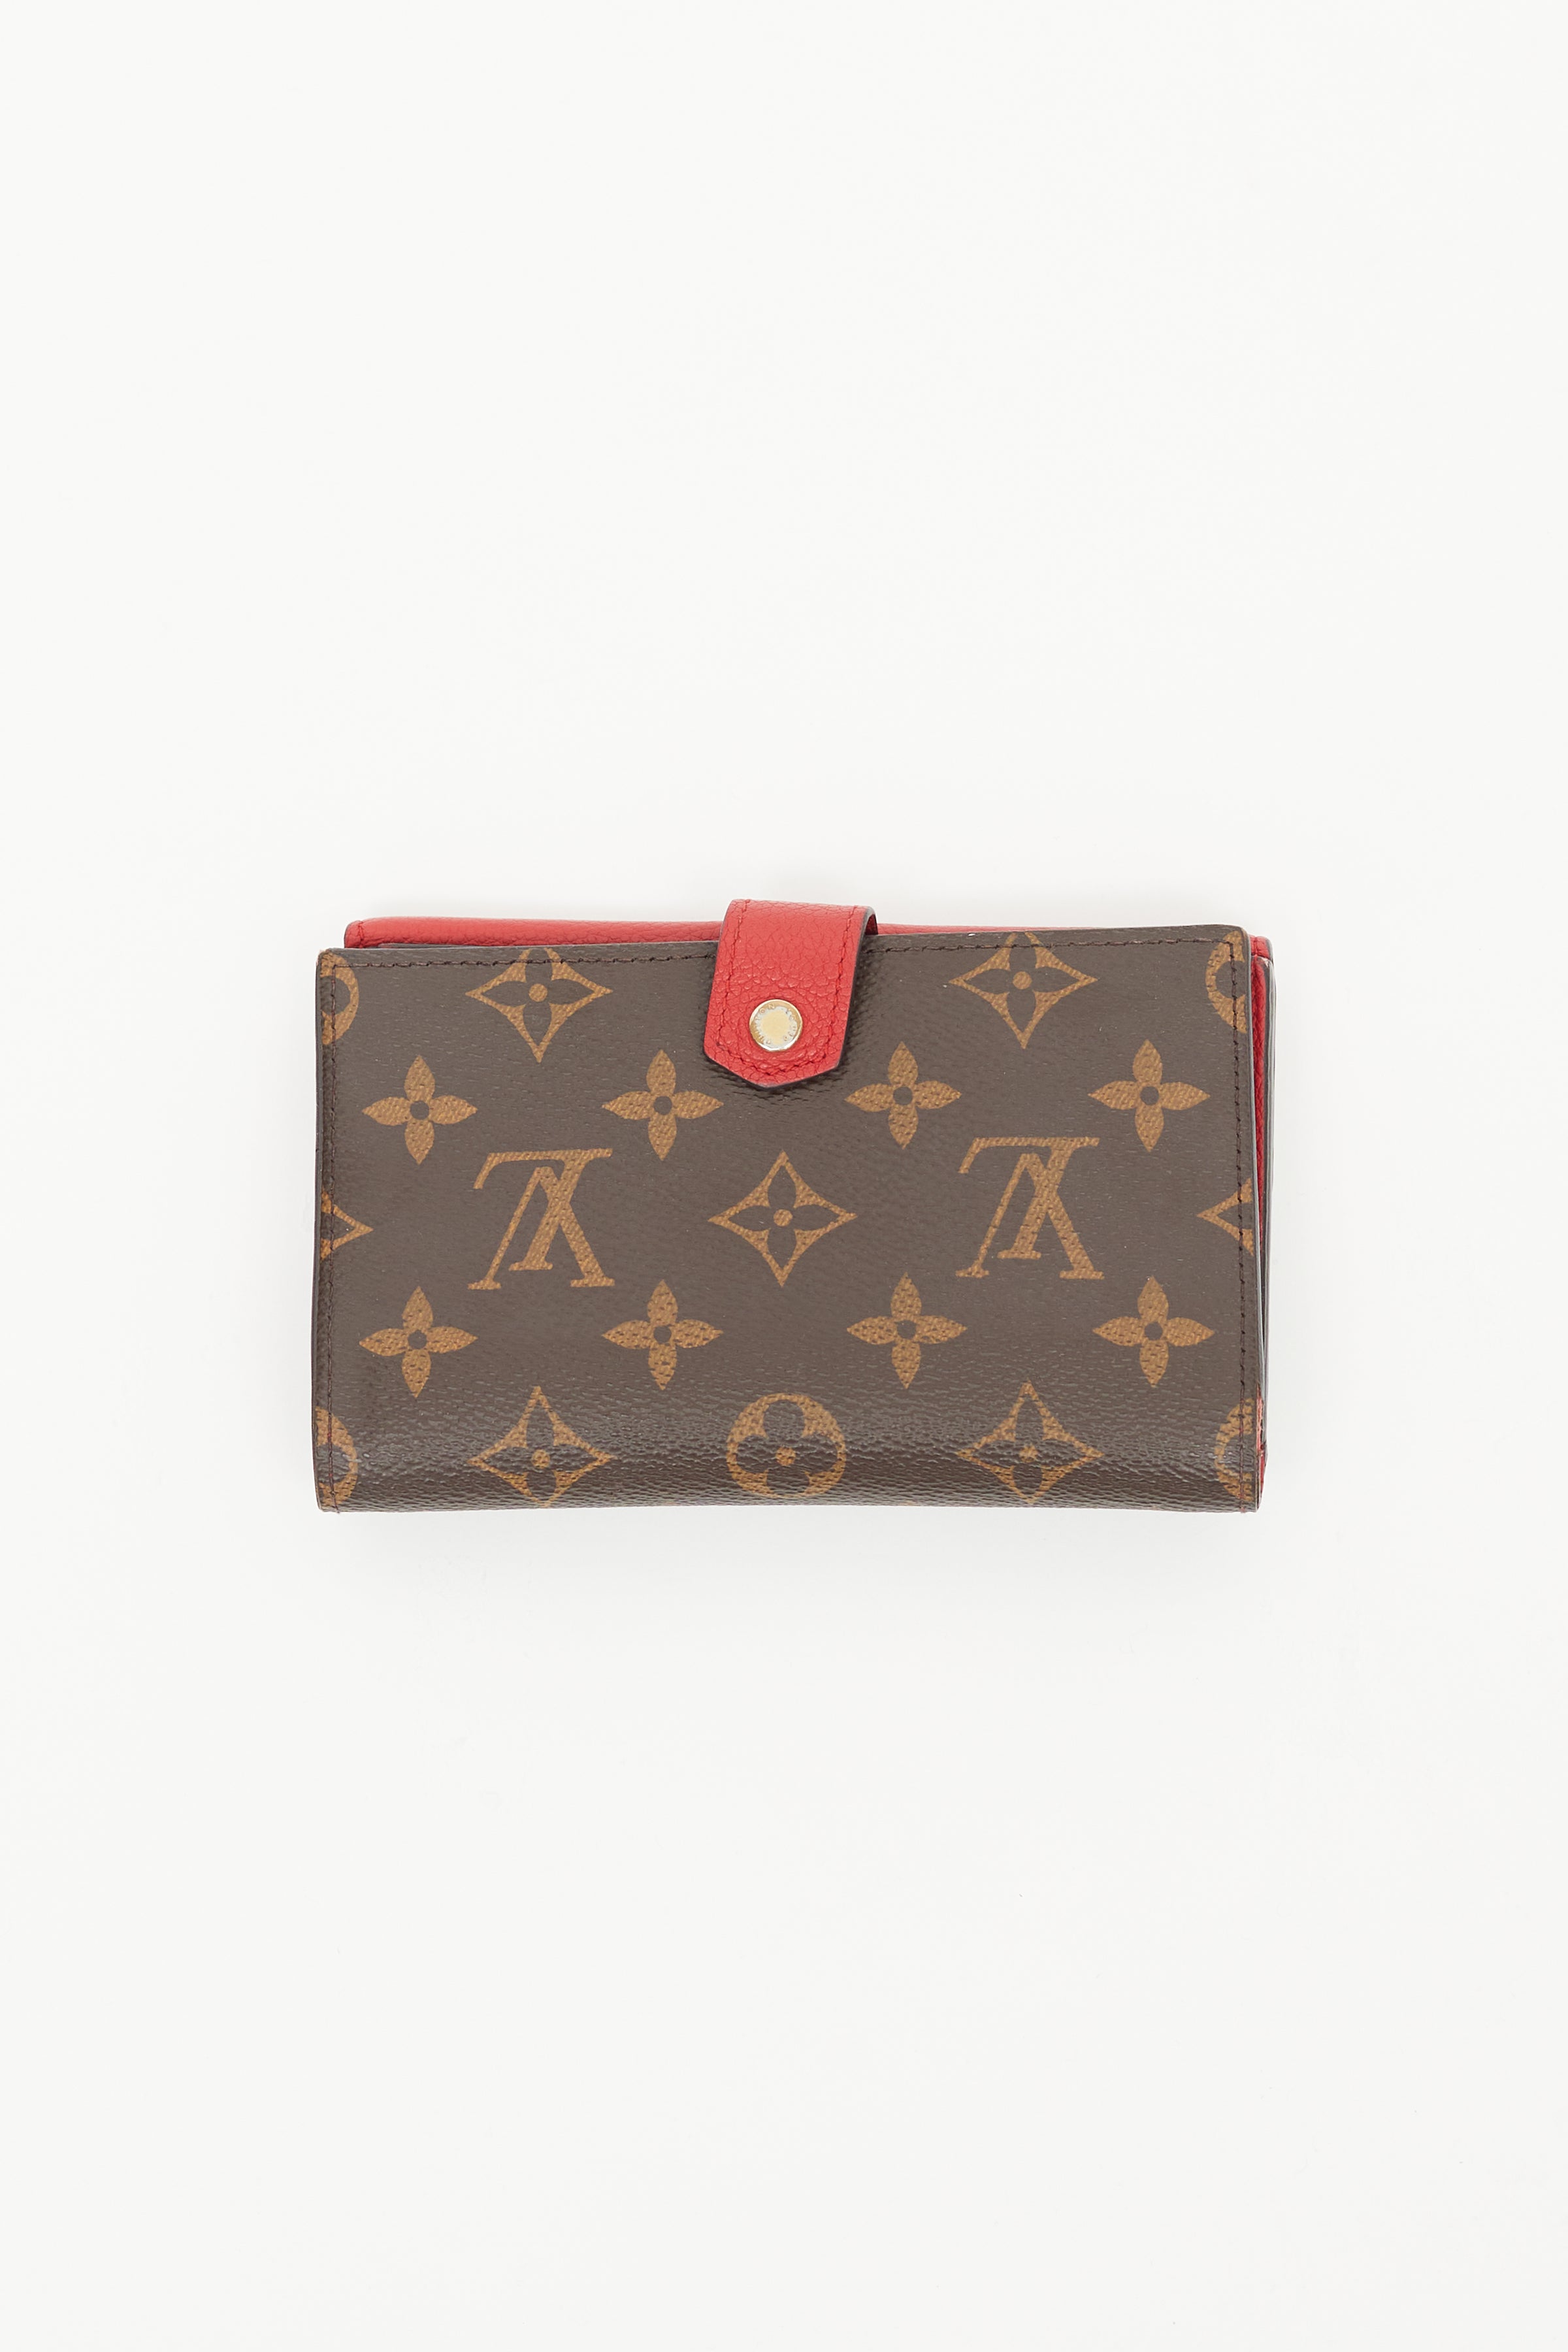 Louis Vuitton, Bags, Louis Vuitton Lv Double Sided Snap Wallet Monogram